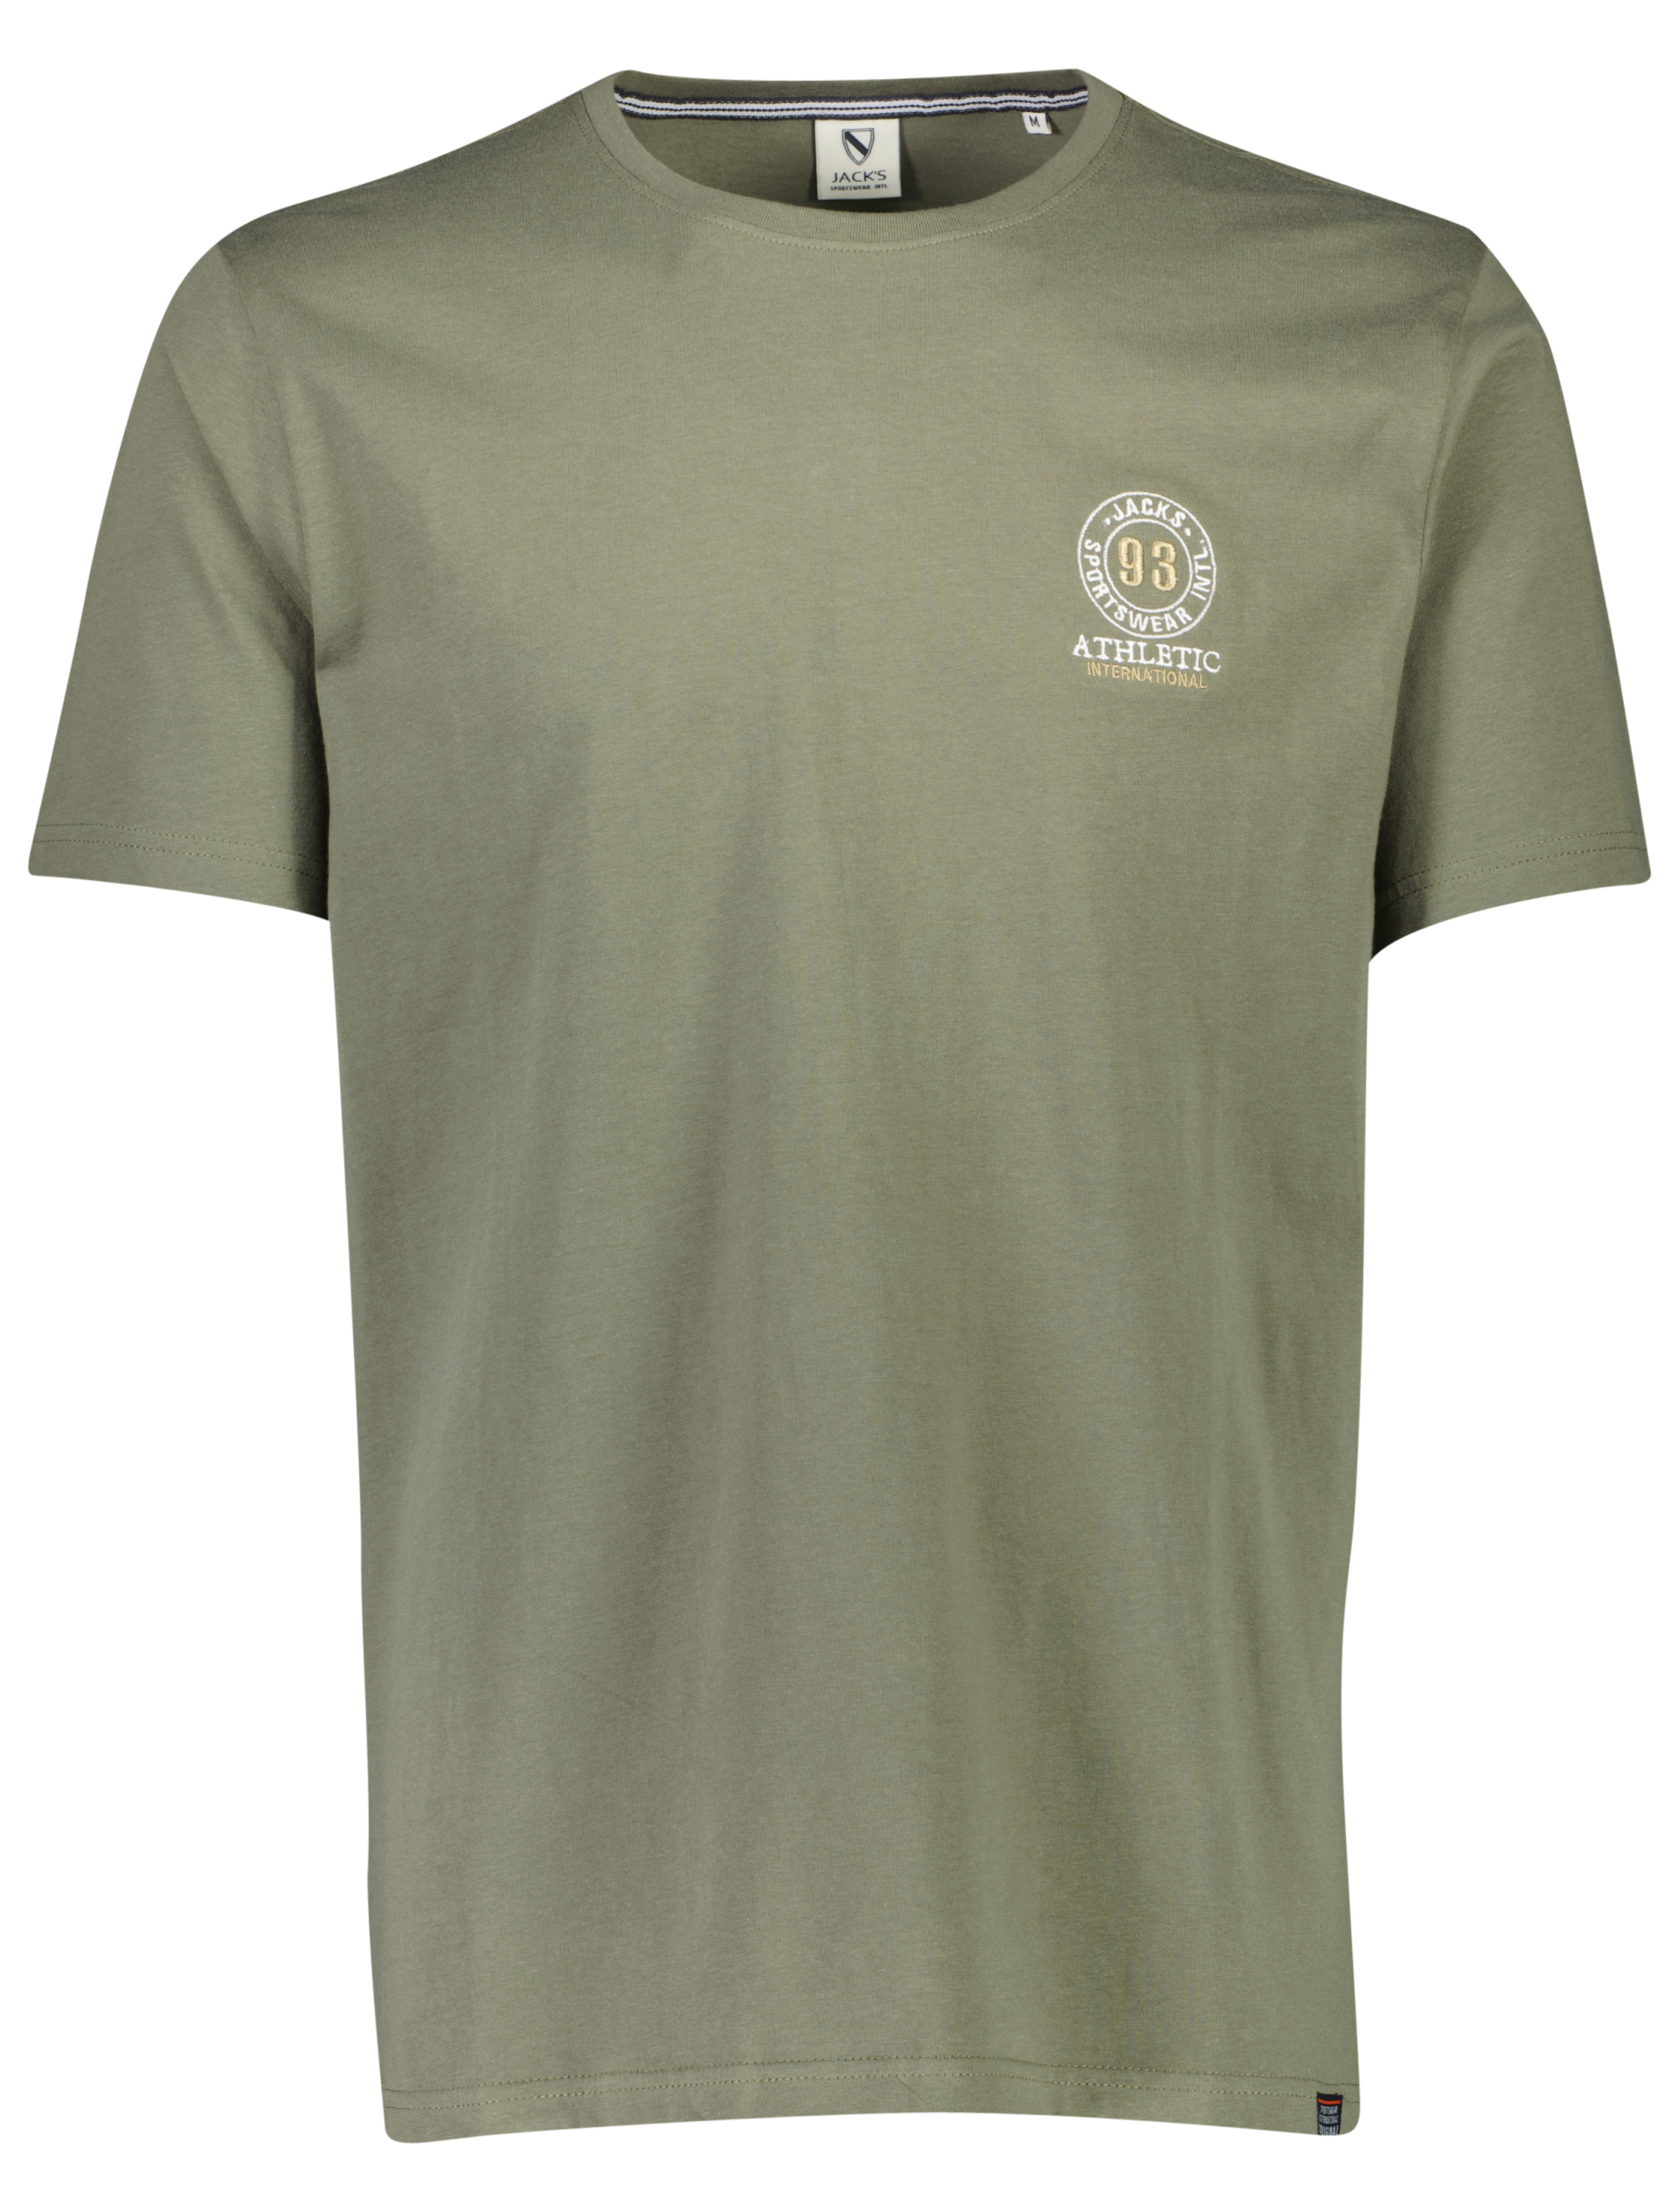 Jack's T-shirt grøn / lt army